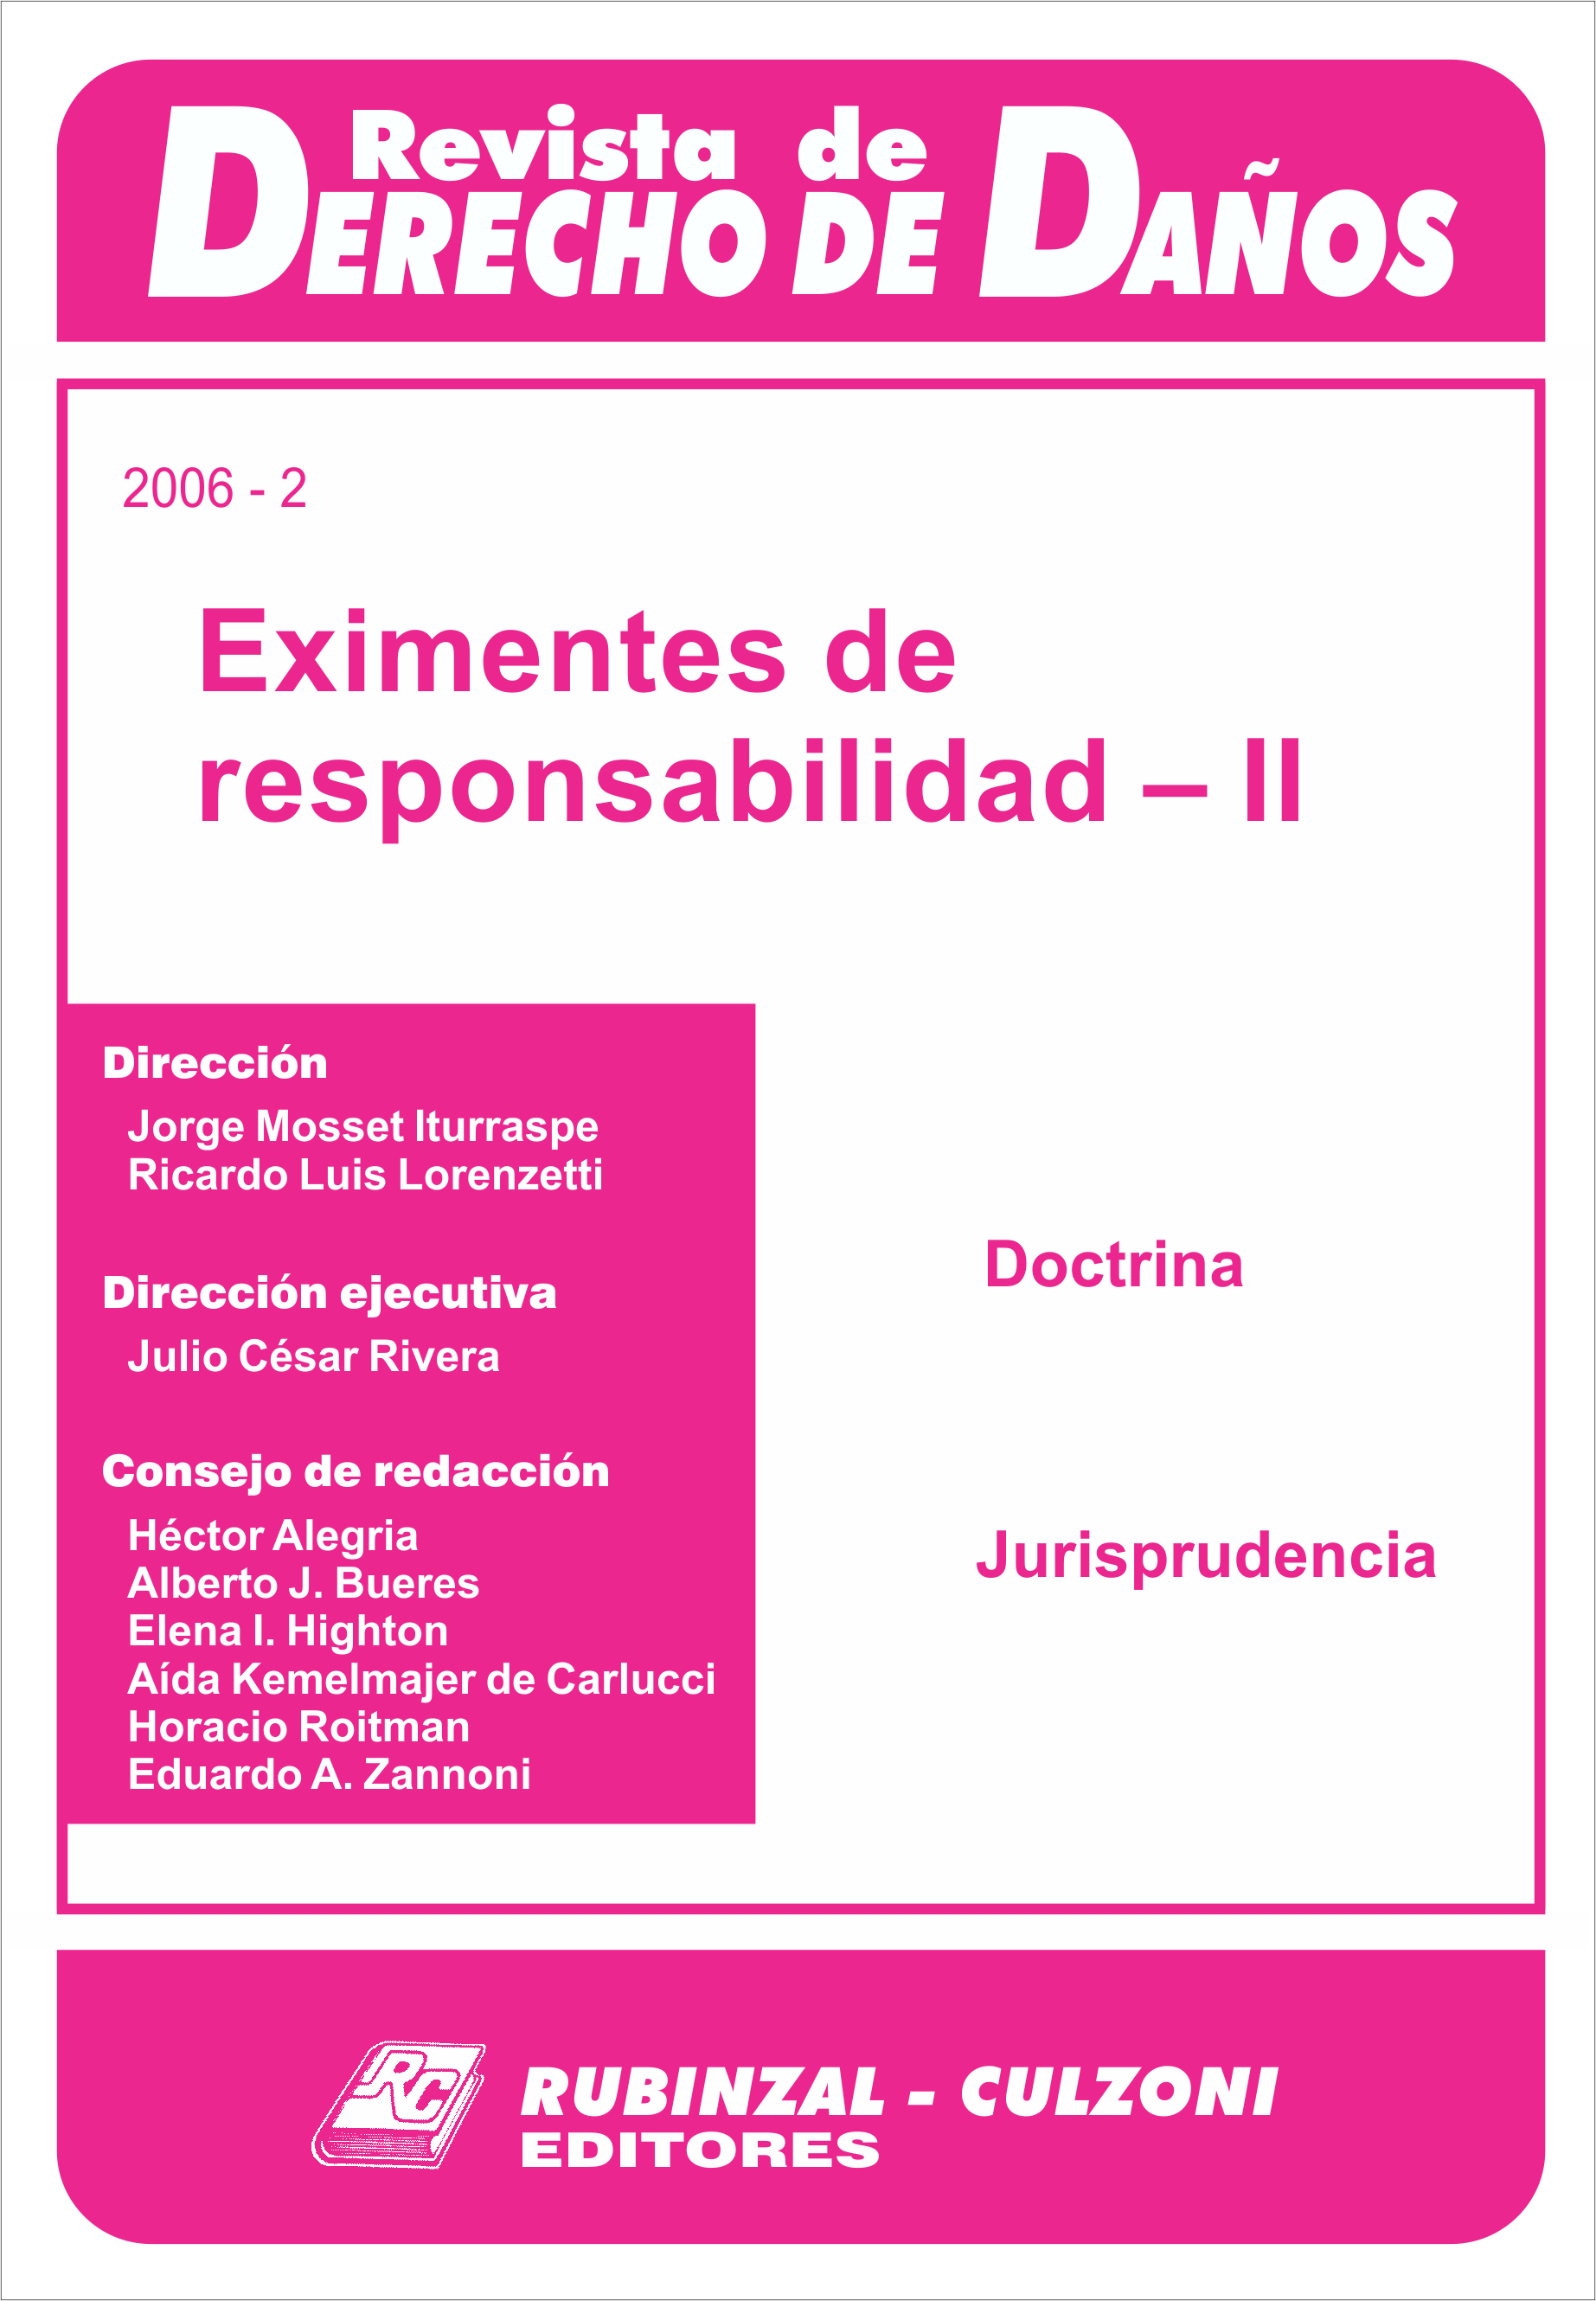 Revista de Derecho de Daños - Eximentes de responsabilidad - II.